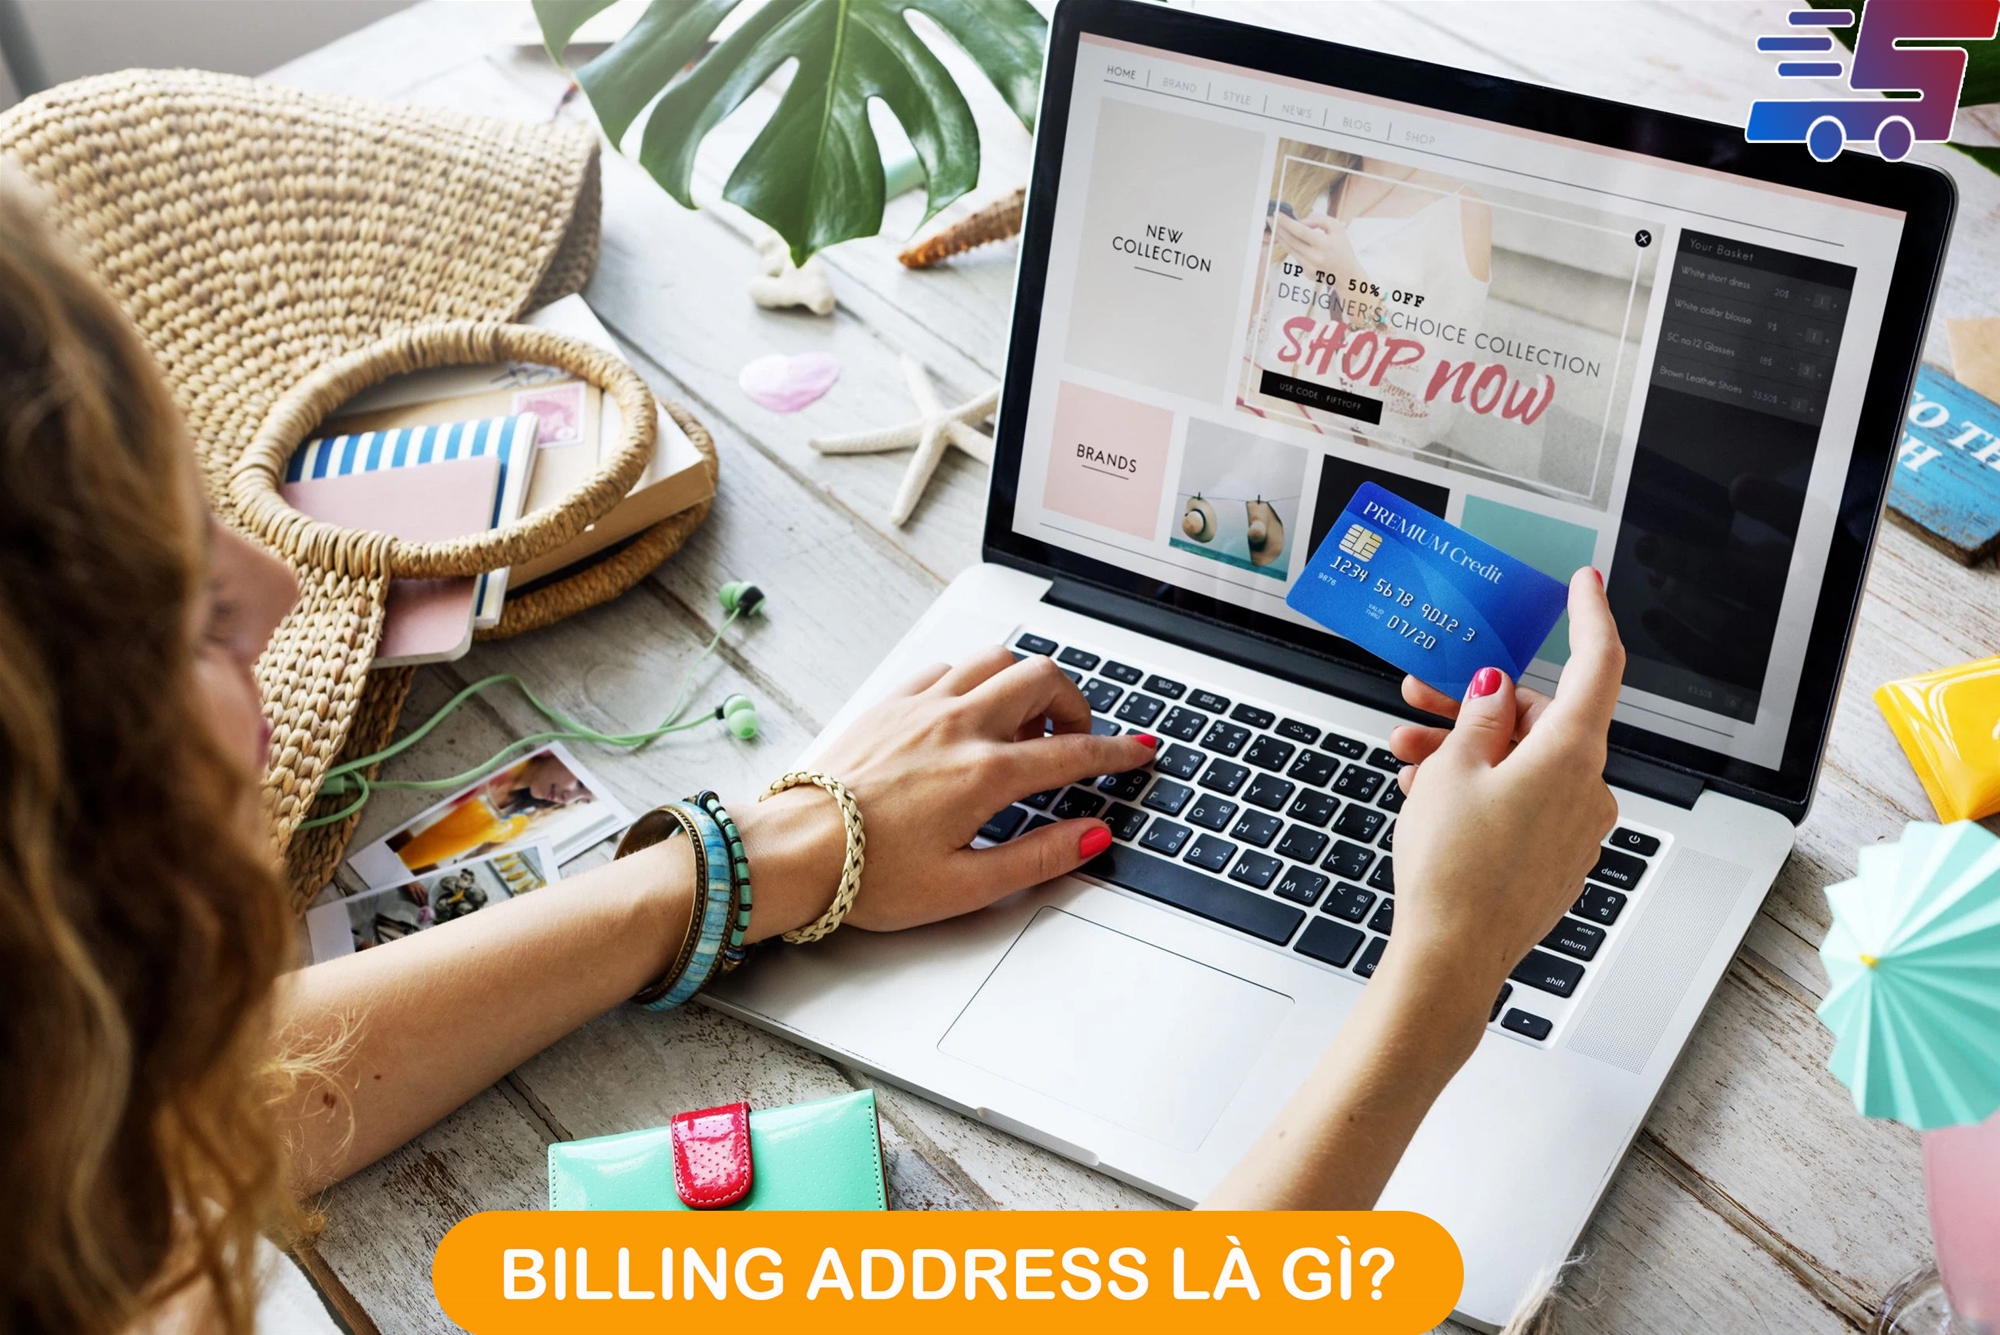 Billing address là gì? Hướng dẫn cách điền Billing address 